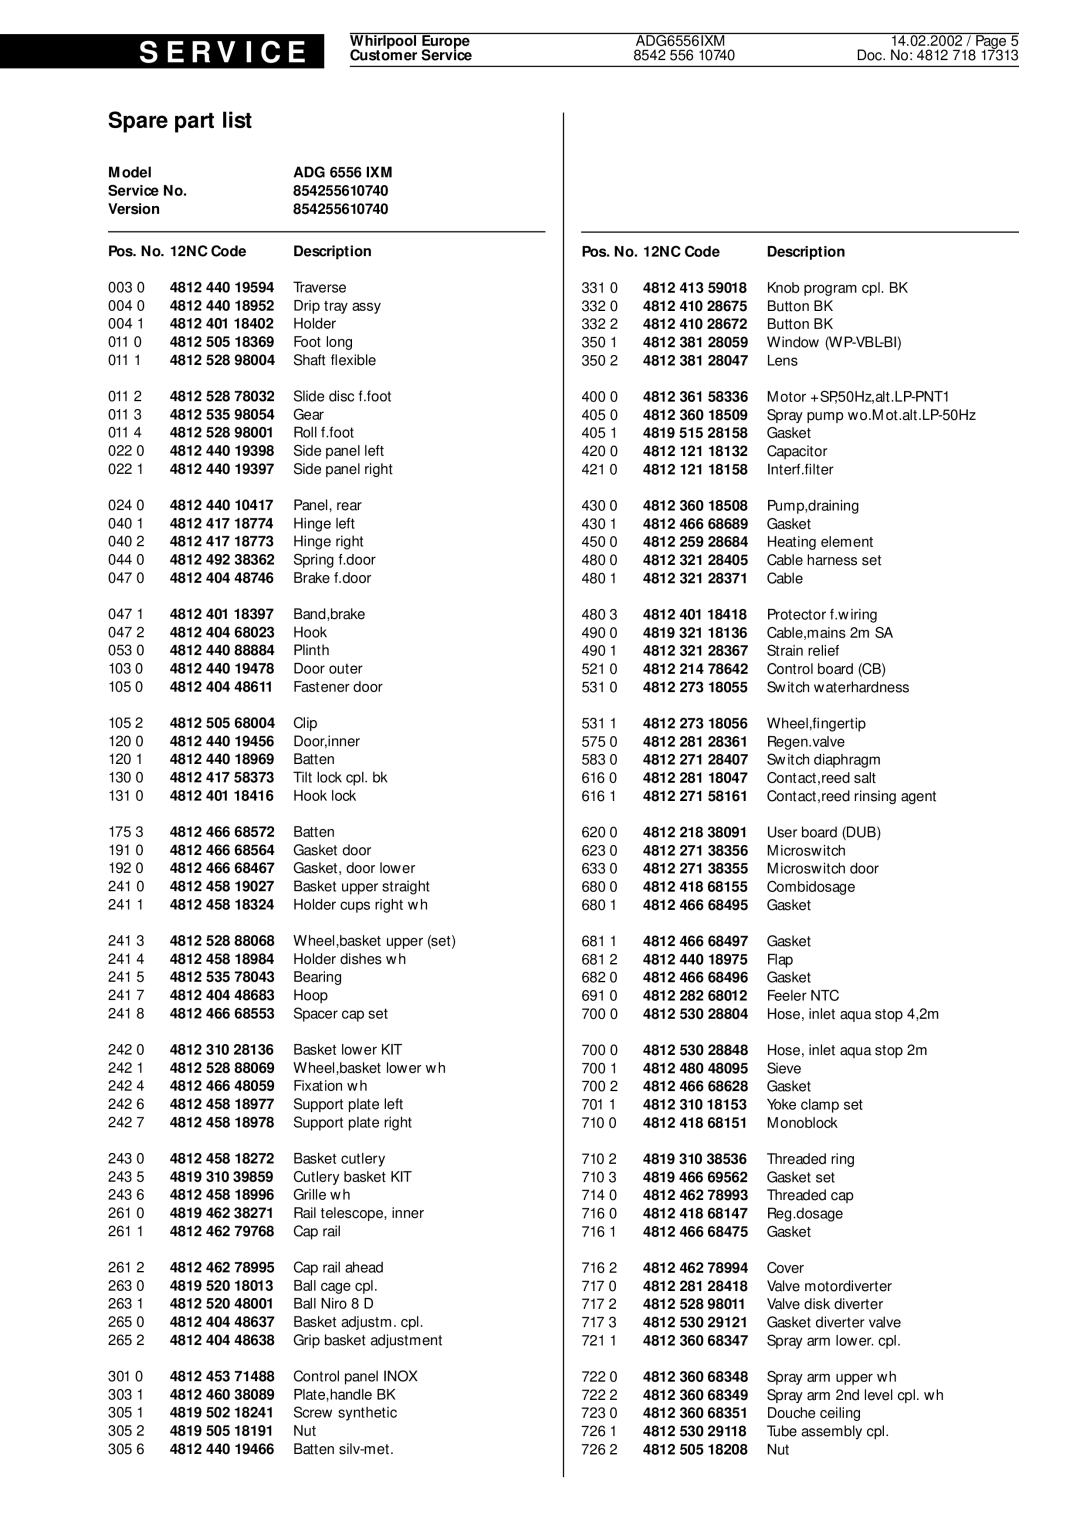 Whirlpool ADG 6556 IXM service manual Spare part list, S E R V I C E 